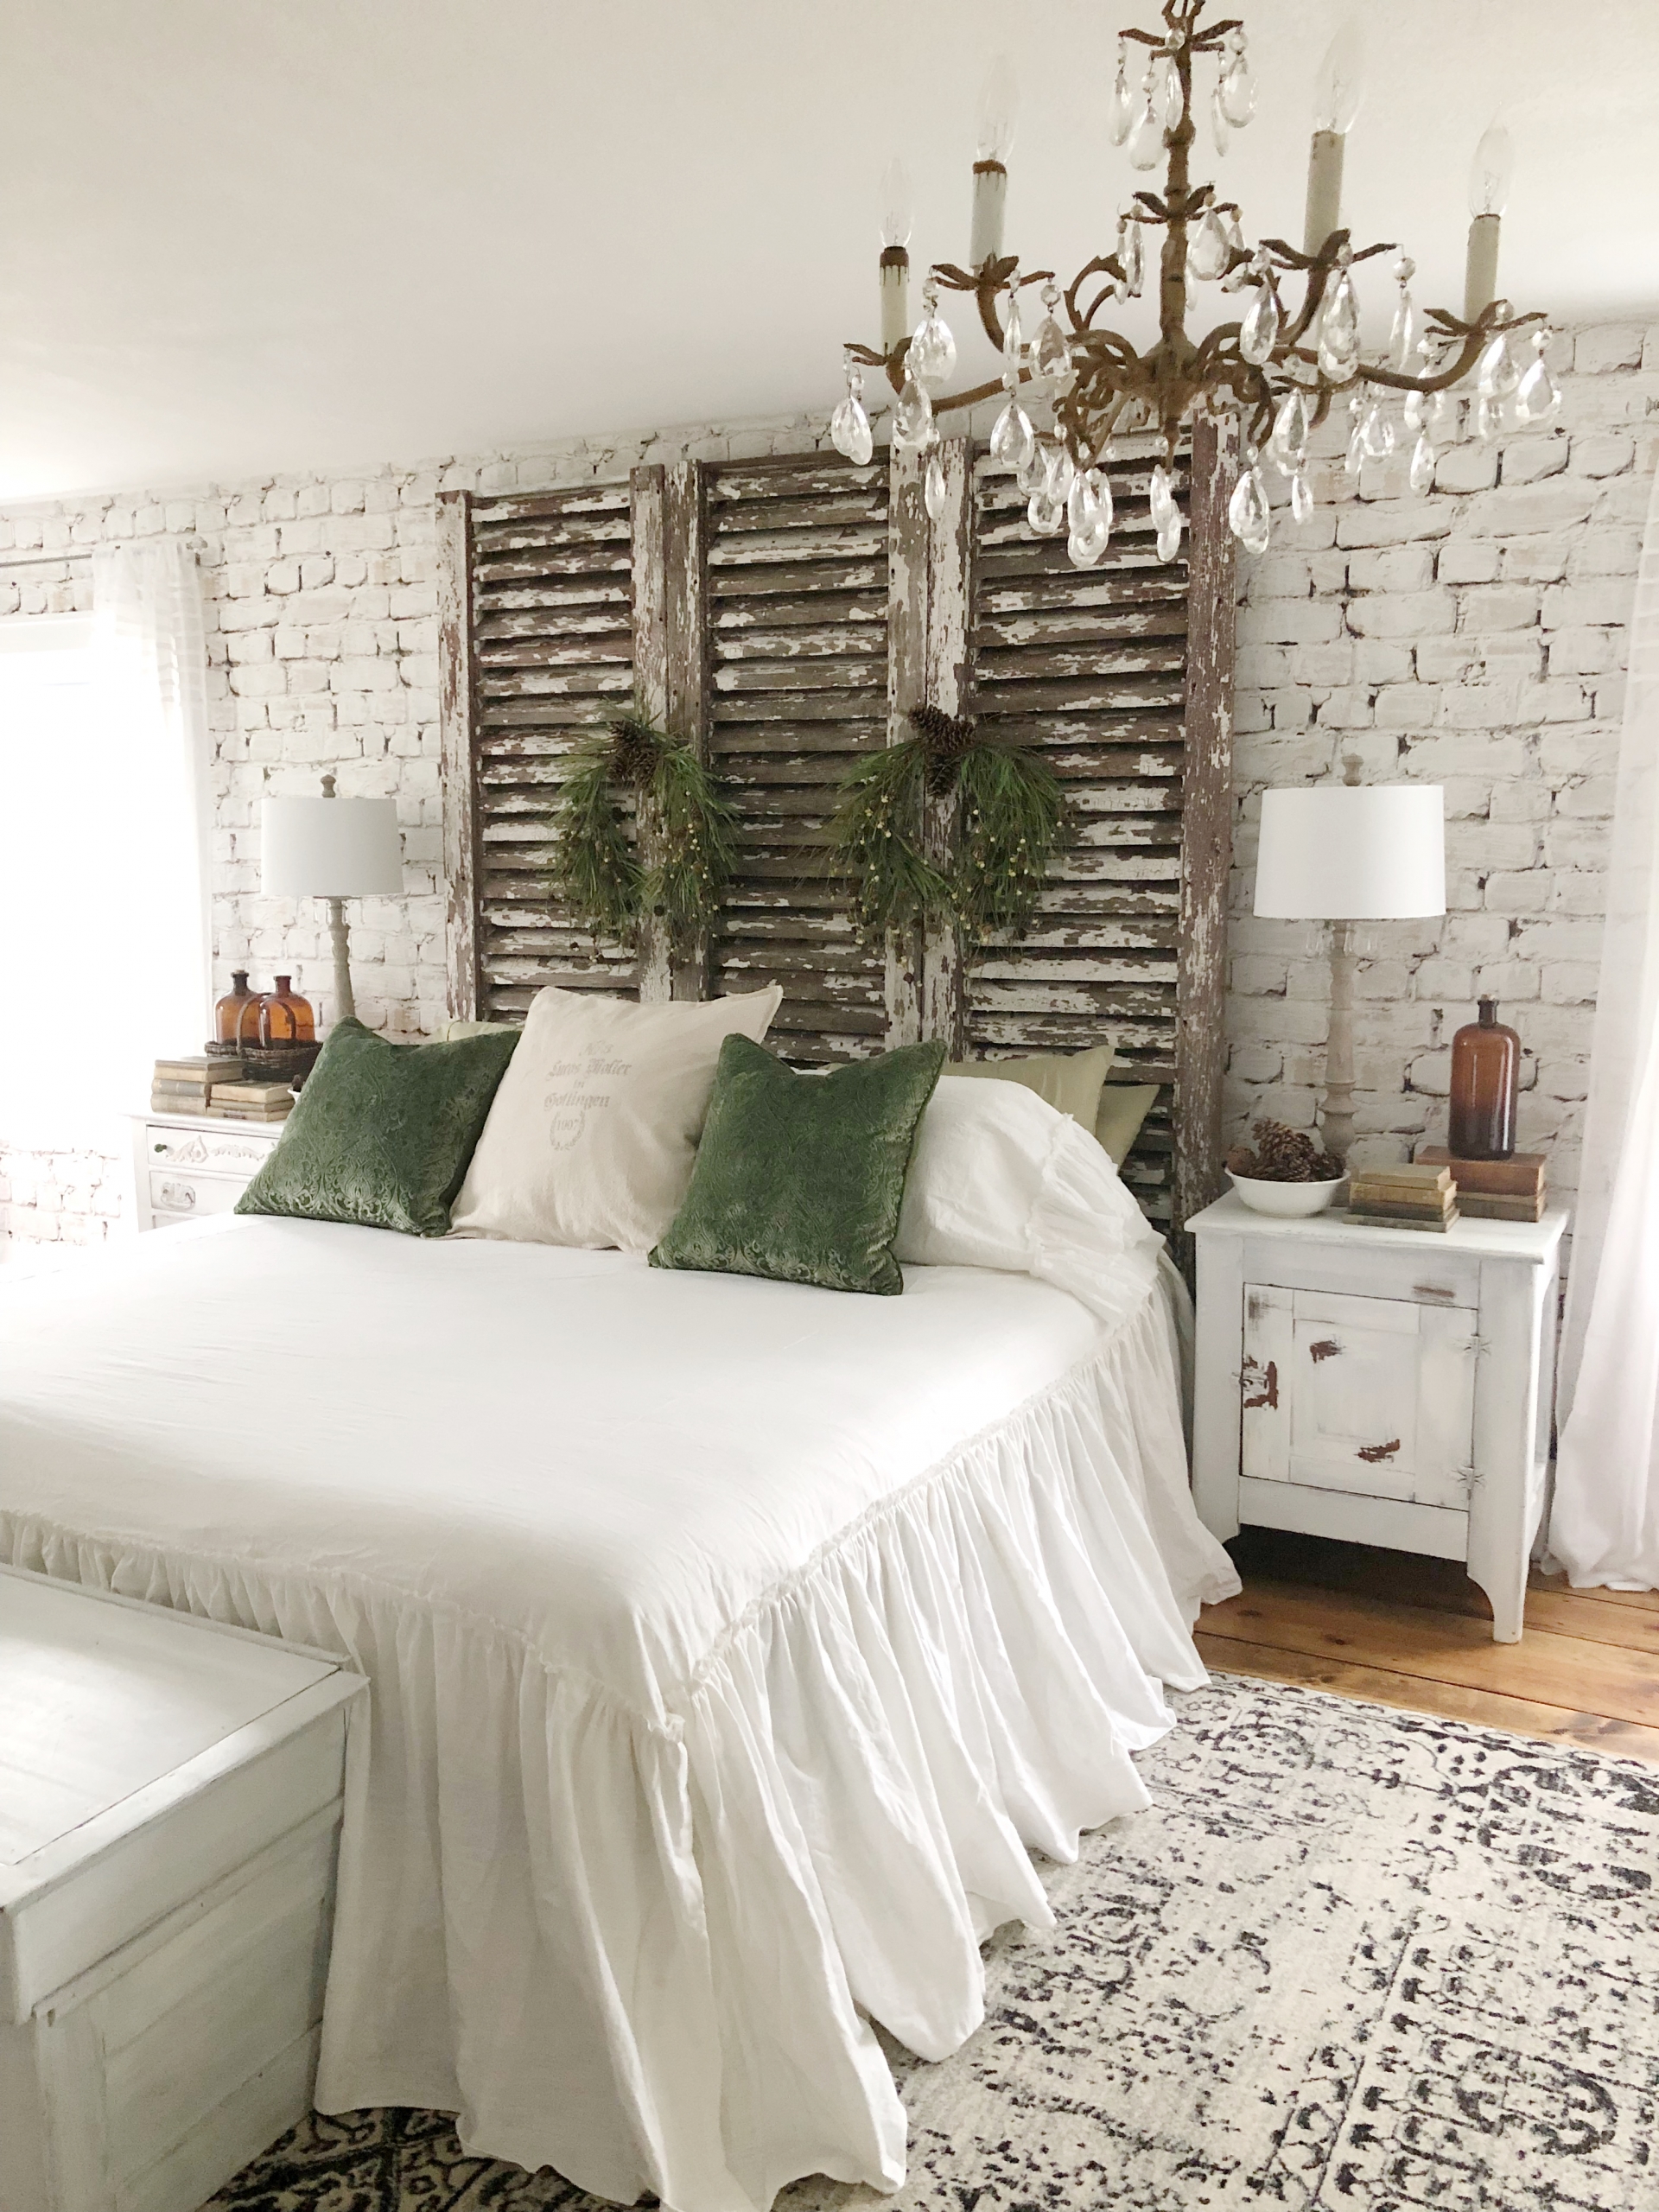 Sự kết hợp giữa bức tường gạch thô lớp với sơn màu trắng và cánh cửa chớp gỗ mộc mạc ở vị trí đầu giường phòng ngủ. Thêm vào chiếc đèn chùm pha lê với kiểu thiết kế những ngọn nến lung linh càng giúp không gian thư giãn thêm phần ấn tượng.